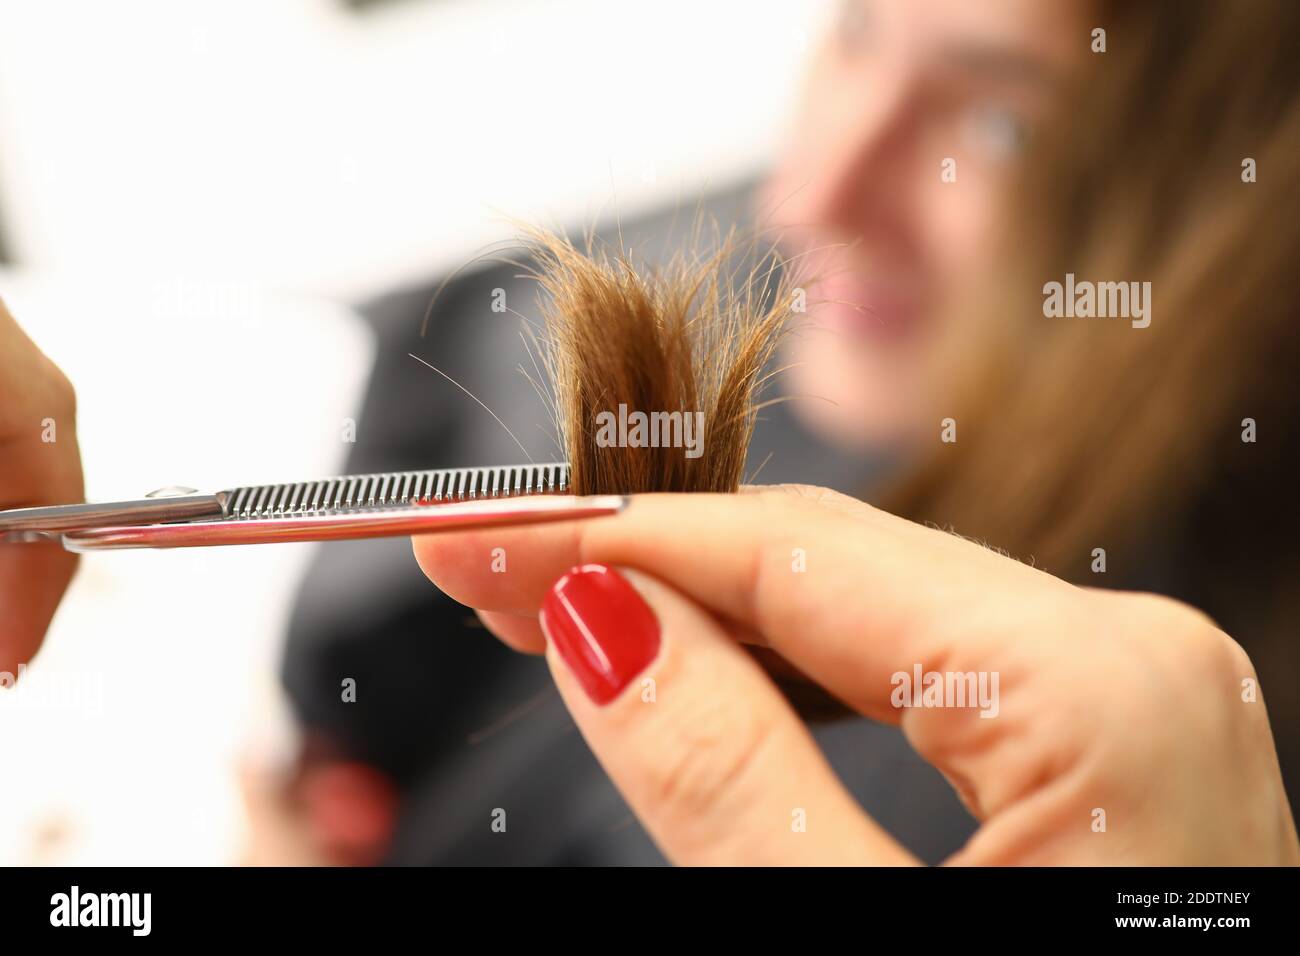 Friseursalon halten Haarsträhne in der Hand und schneiden einen Teil davon mit einer Schere. Stockfoto